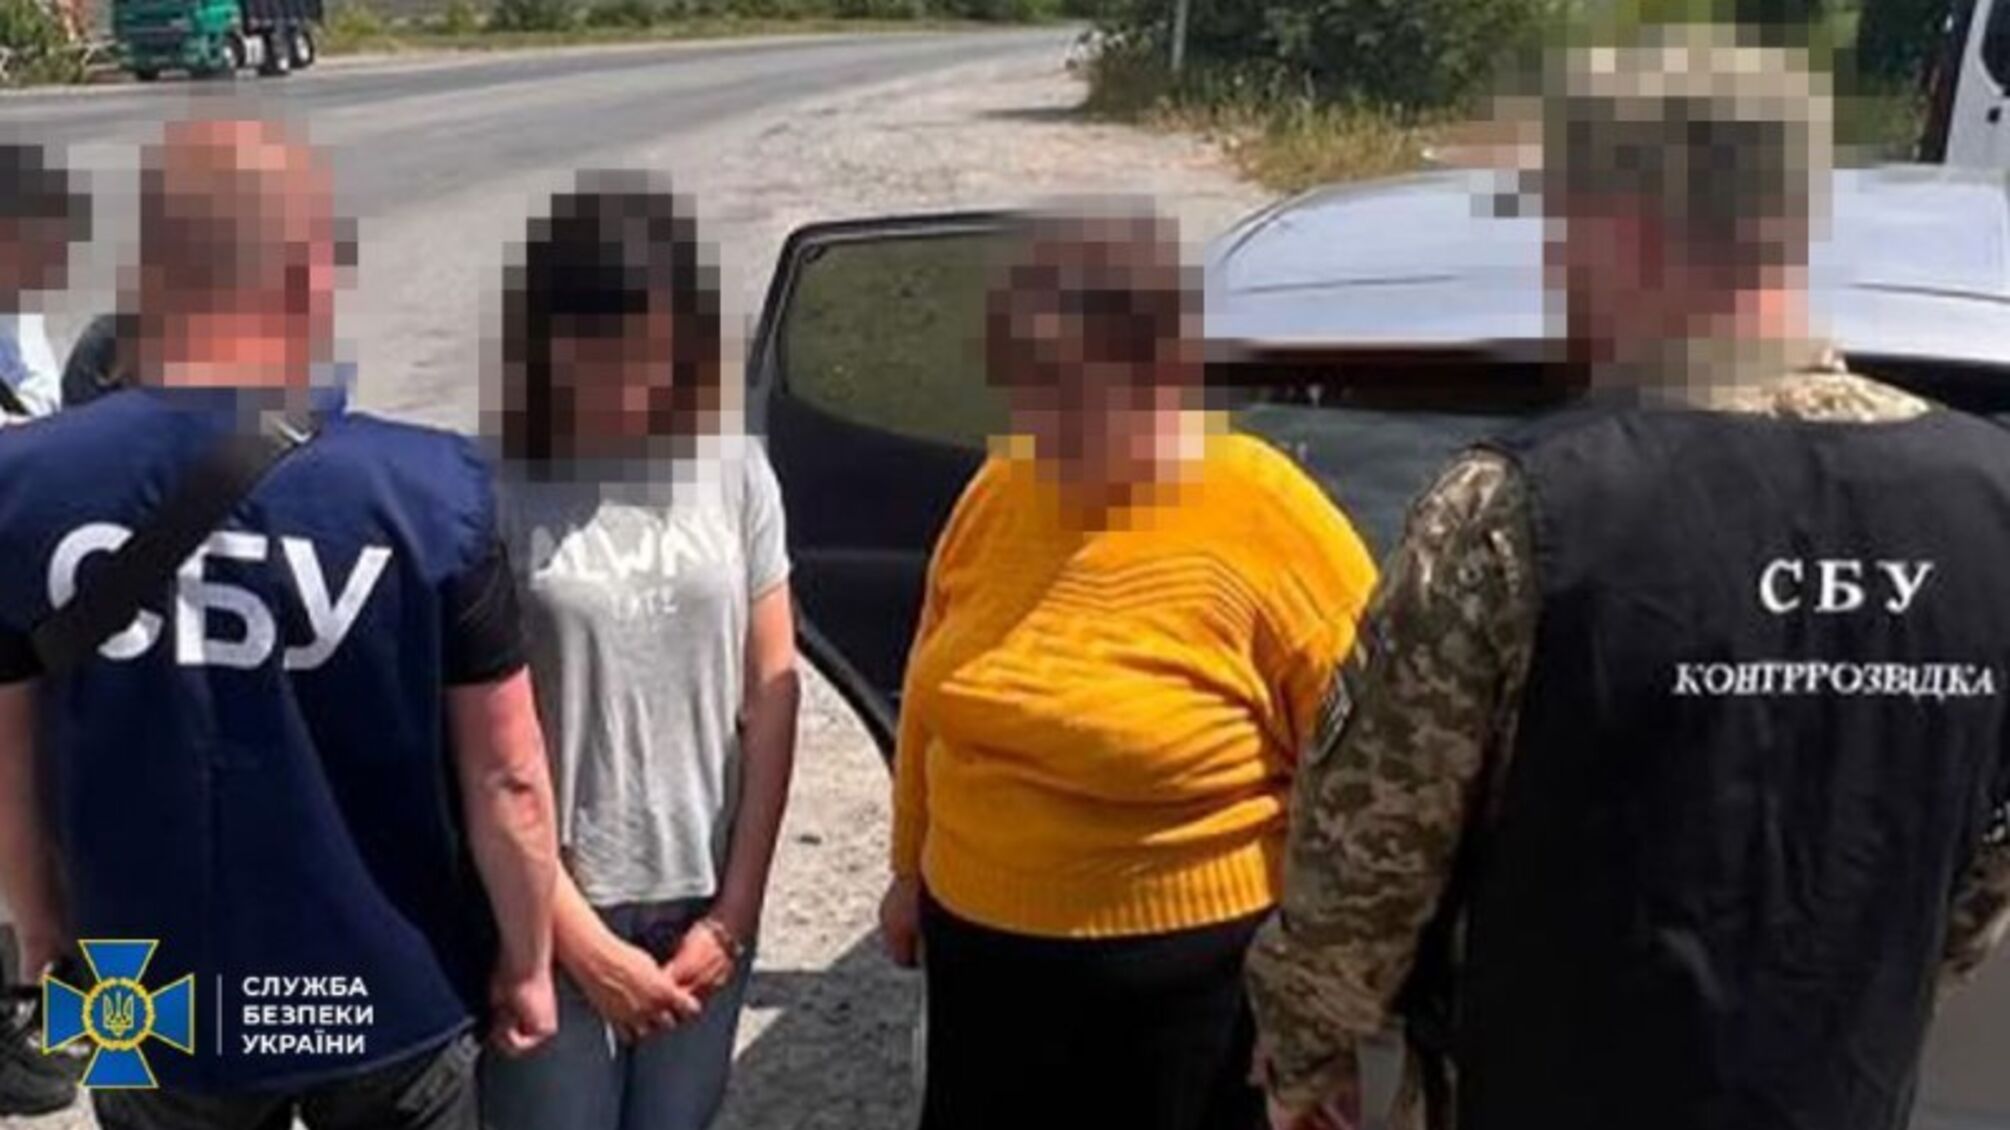 Хмельницька депутатка разом зі своїми дітьми шпигувала для фсб: СБУ затримала родину